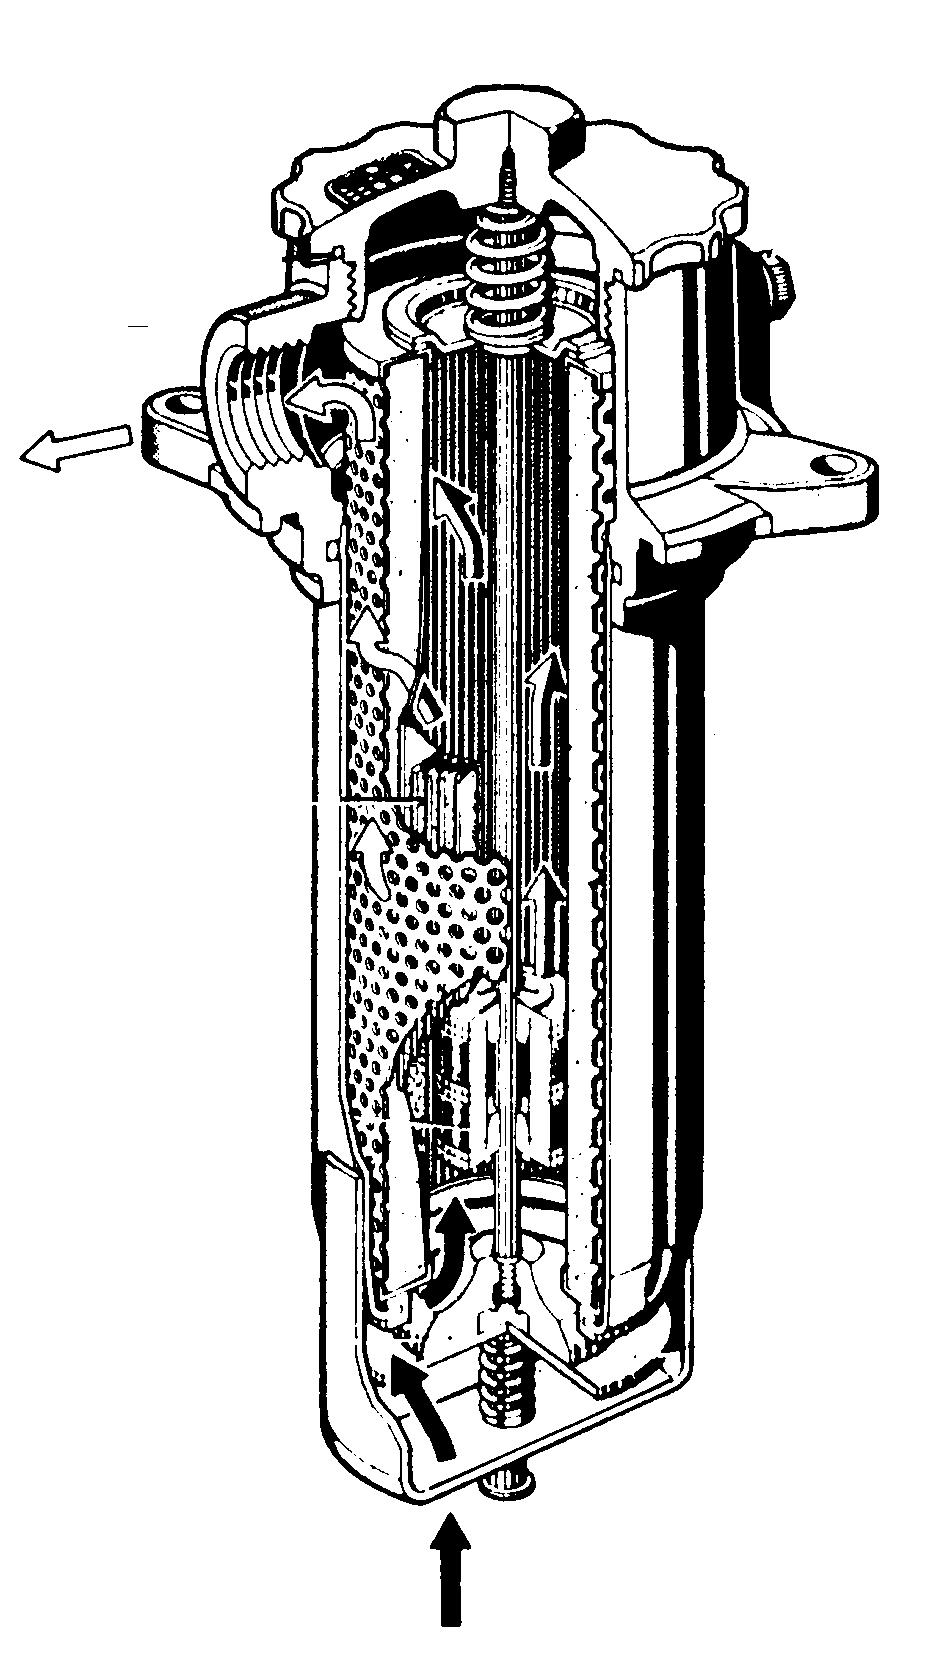 Hydraulsystemet (18) Centralfiltret Byt centralfiltret i tanken. Detta kan behövas göras oftare beroende på om tryckmätaren (A) indikerar byte.